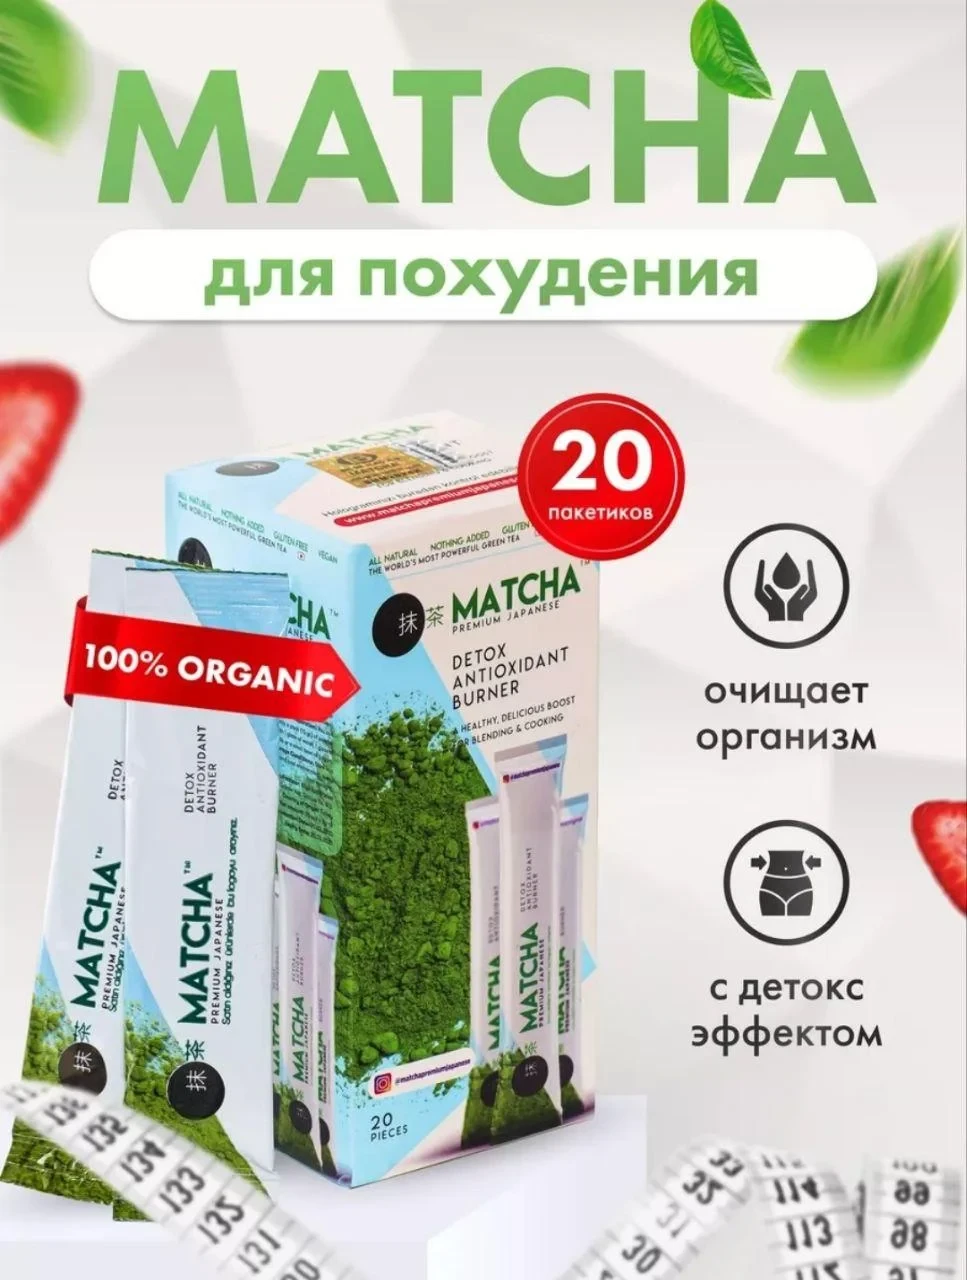 Matcha detox ,Матча чай детокс для похудения Турция оригинал